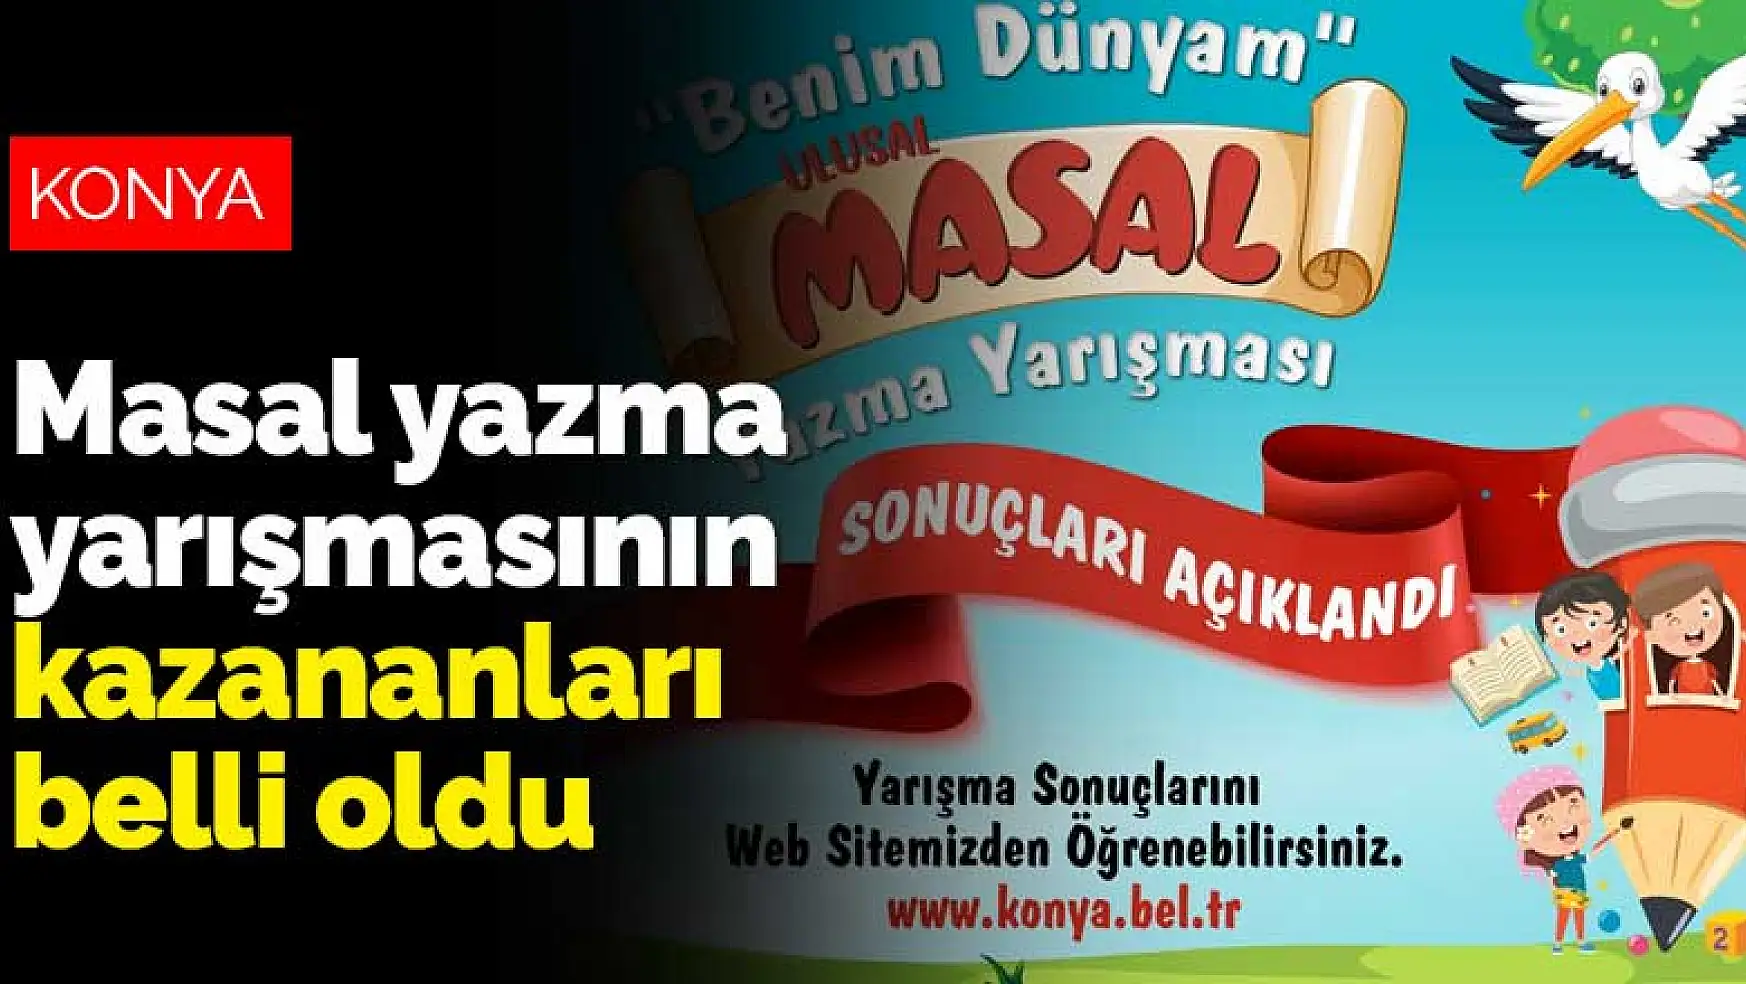 Konya Büyükşehir'in masal yazma yarışmasının kazananları belli oldu